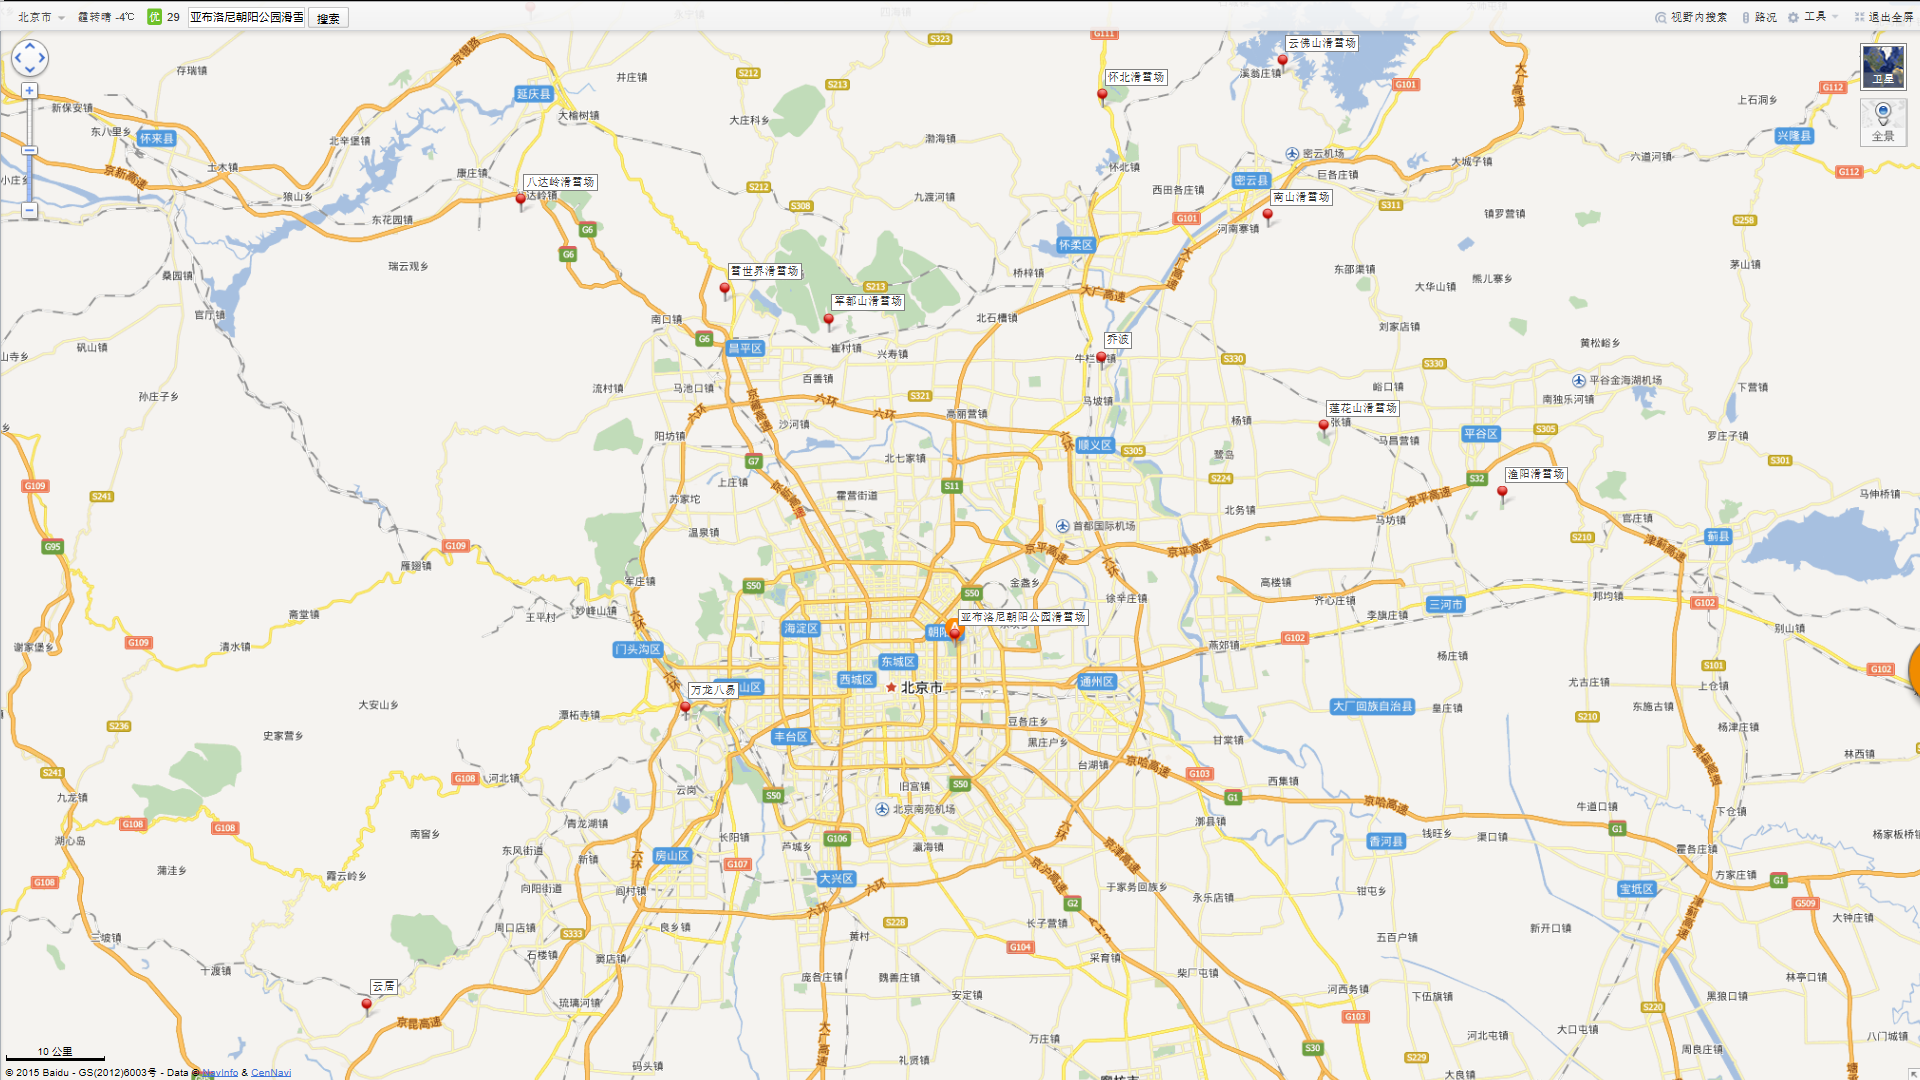 把北京周边滑雪场在地图上标了一下,供大家参考图片